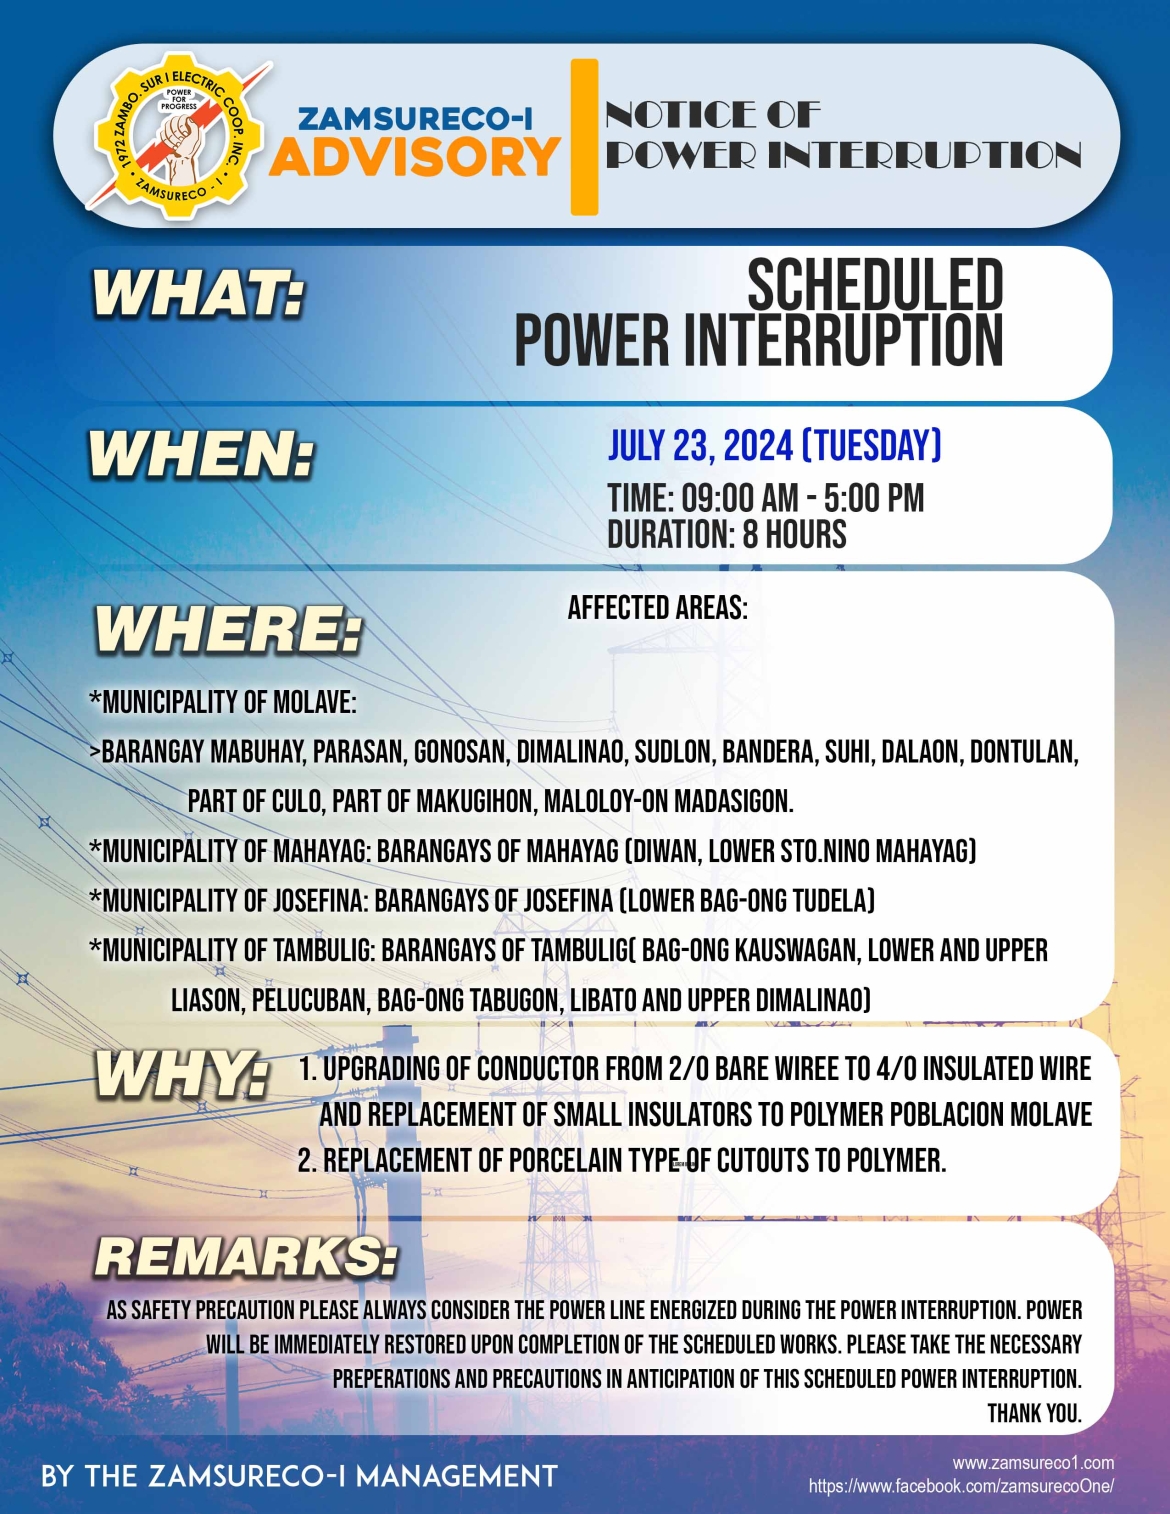 SCHEDULE POWER INTERRUPTION (JULY 23, 2024) between 9:00 AM - 5:00PM